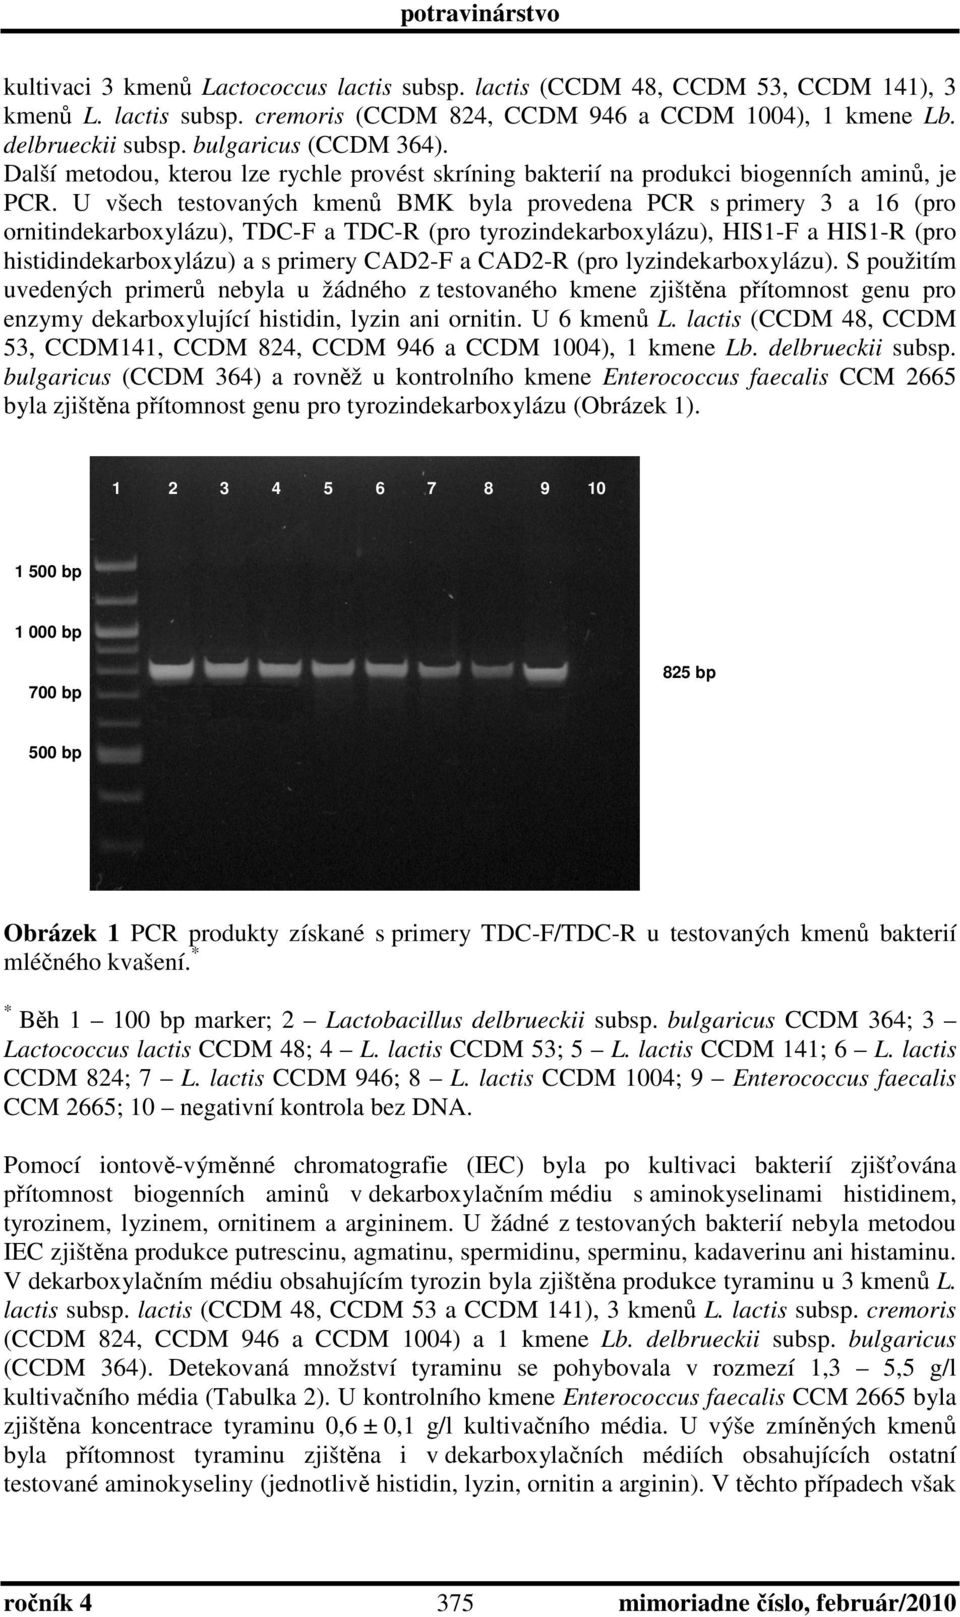 U všech testovaných kmenů BMK byla provedena PCR s primery 3 a 16 (pro ornitindekarboxylázu), TDC-F a TDC-R (pro tyrozindekarboxylázu), HIS1-F a HIS1-R (pro histidindekarboxylázu) a s primery CAD2-F